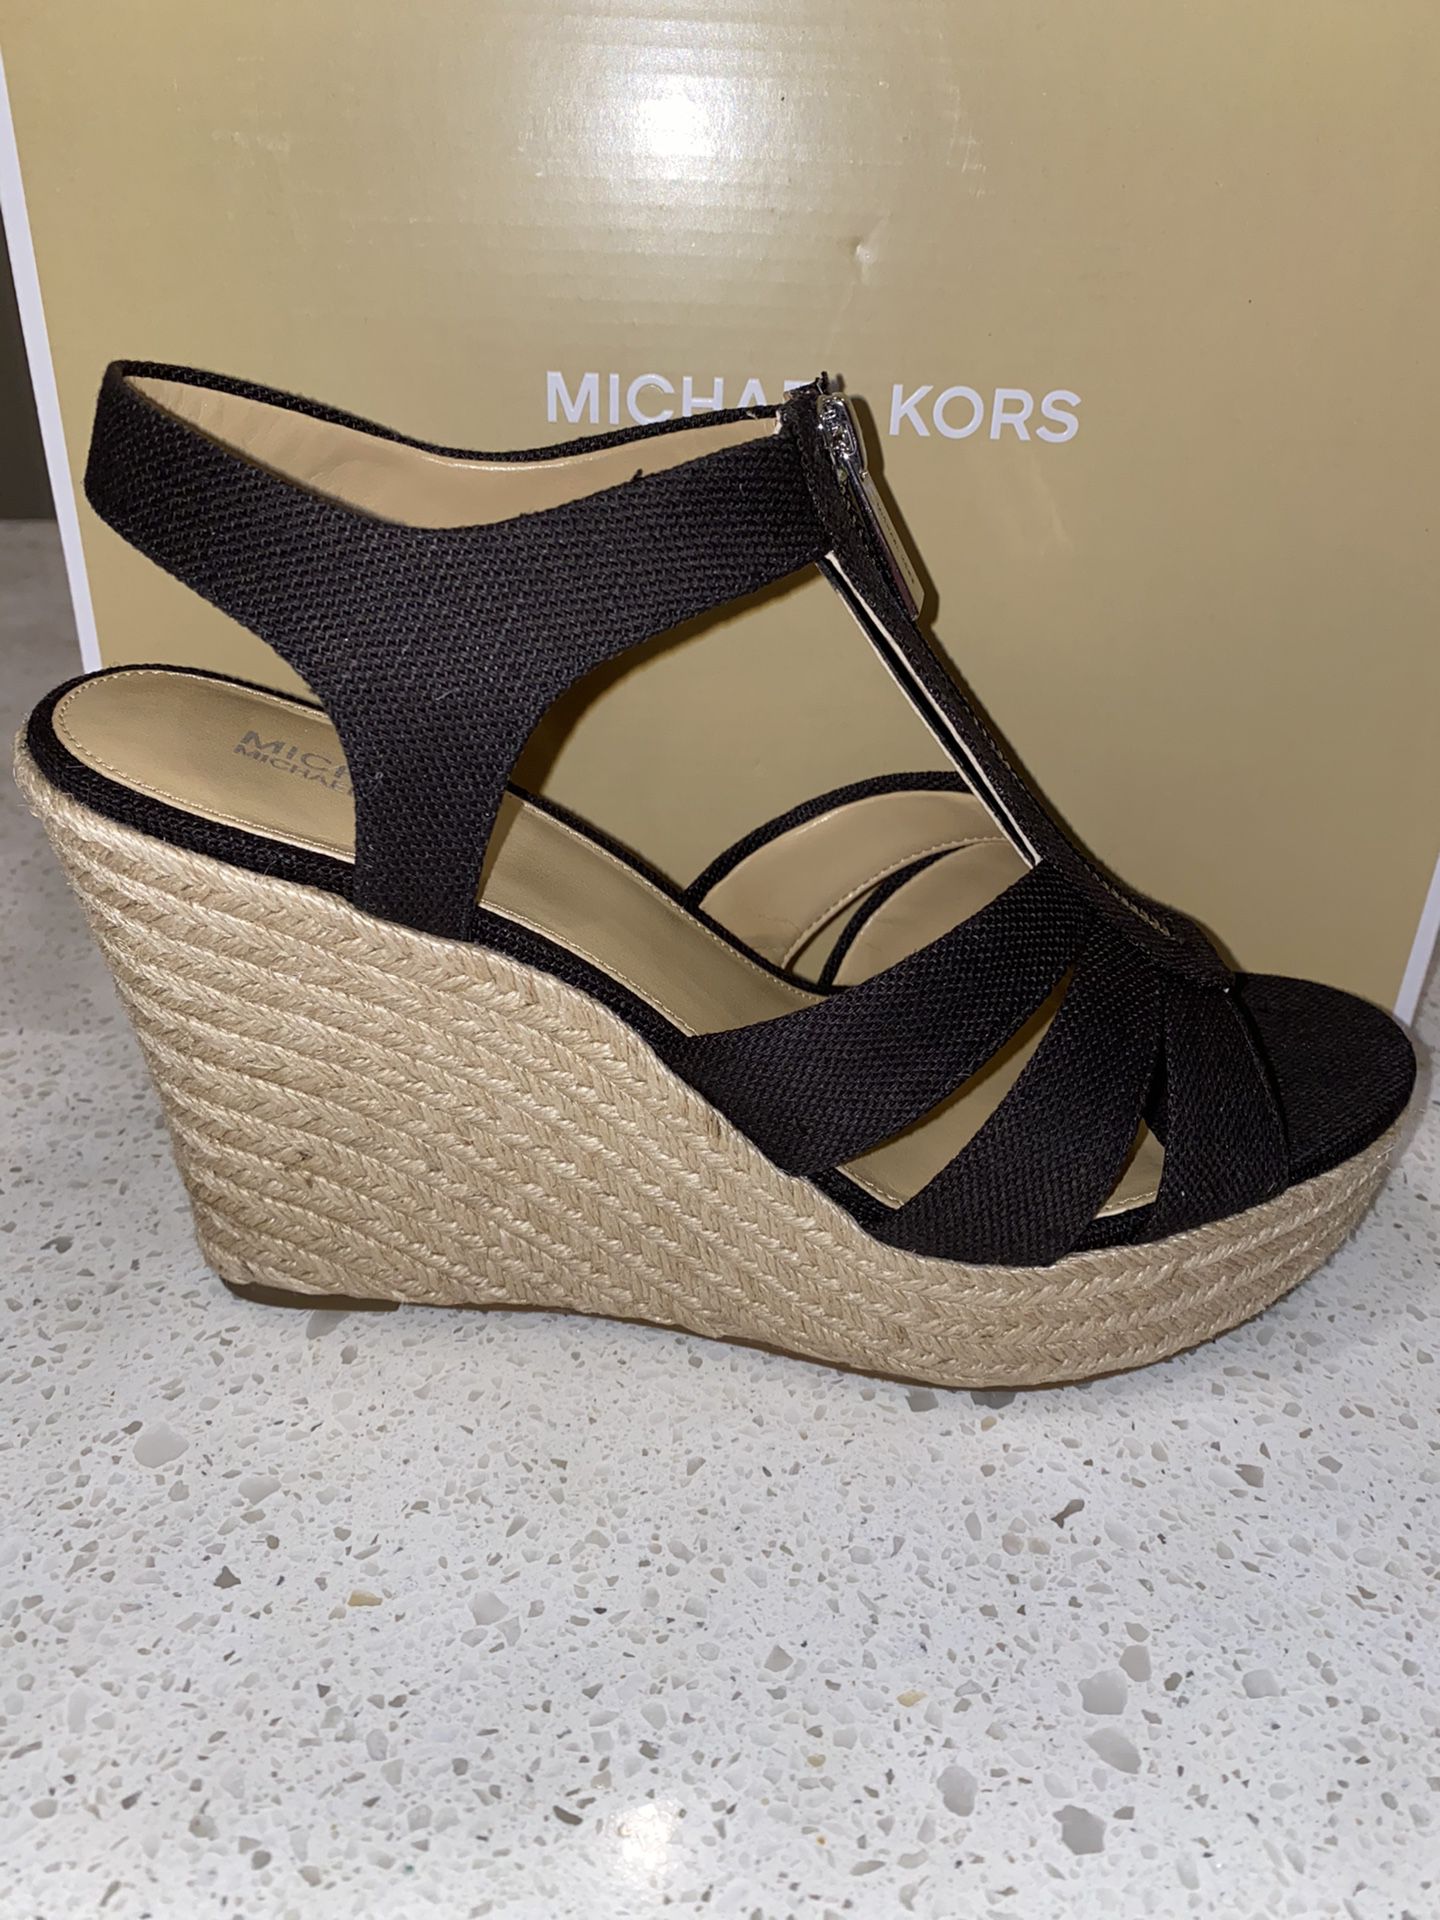 Women’s Size 8 1/2 Michael Kors Shoes